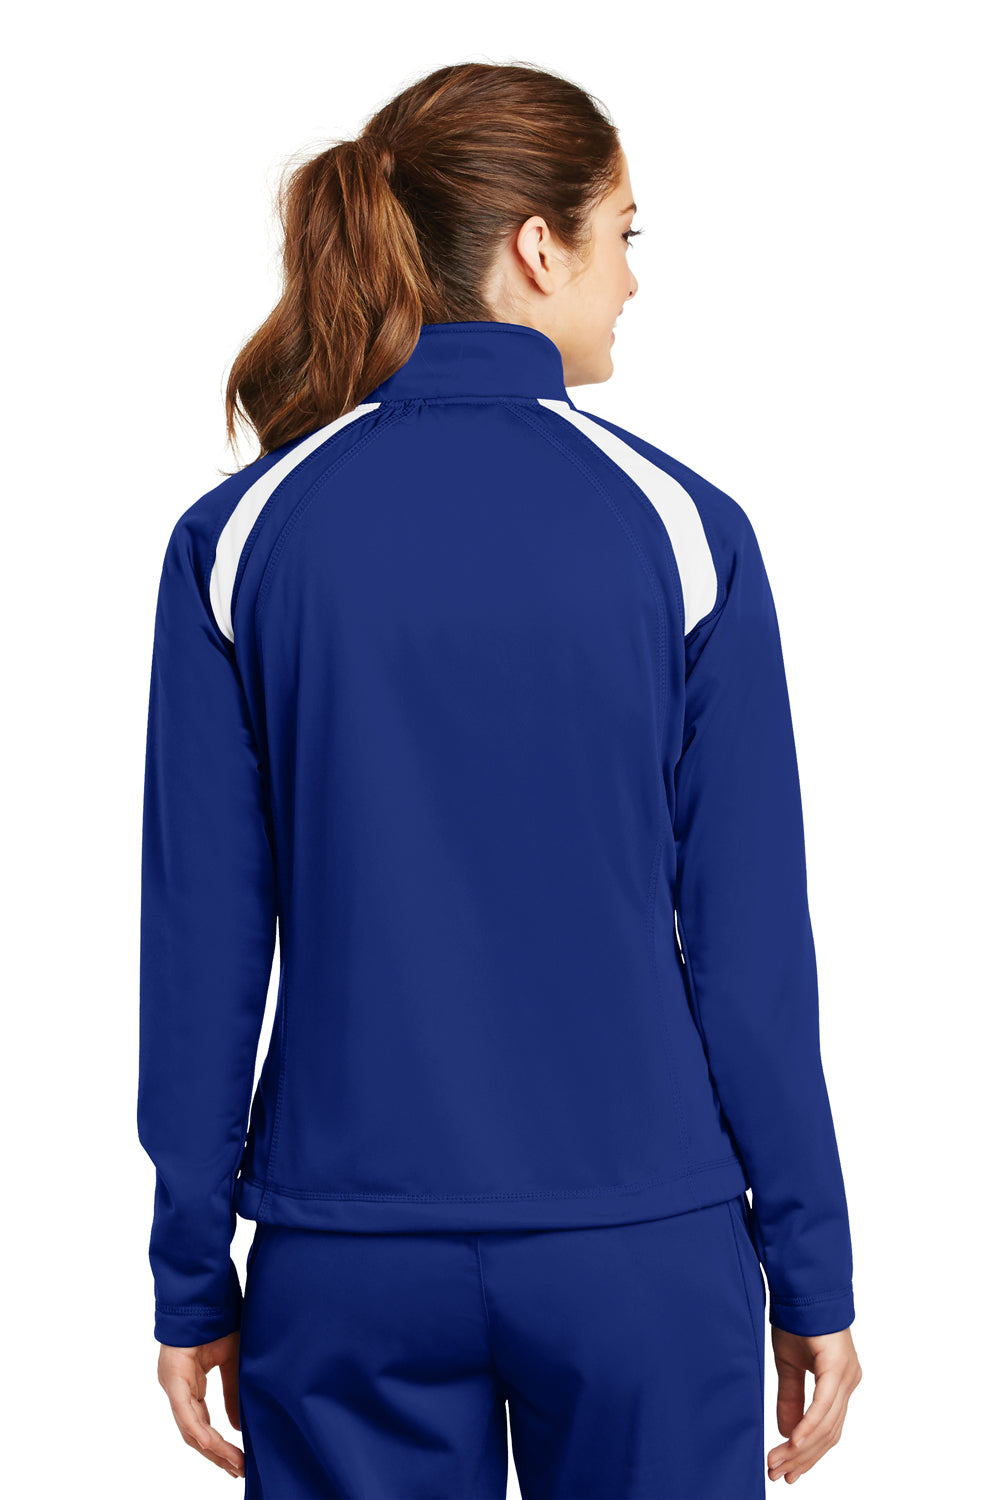 Sport-Tek LST90 Womens Full Zip Track Jacket Royal Blue Back